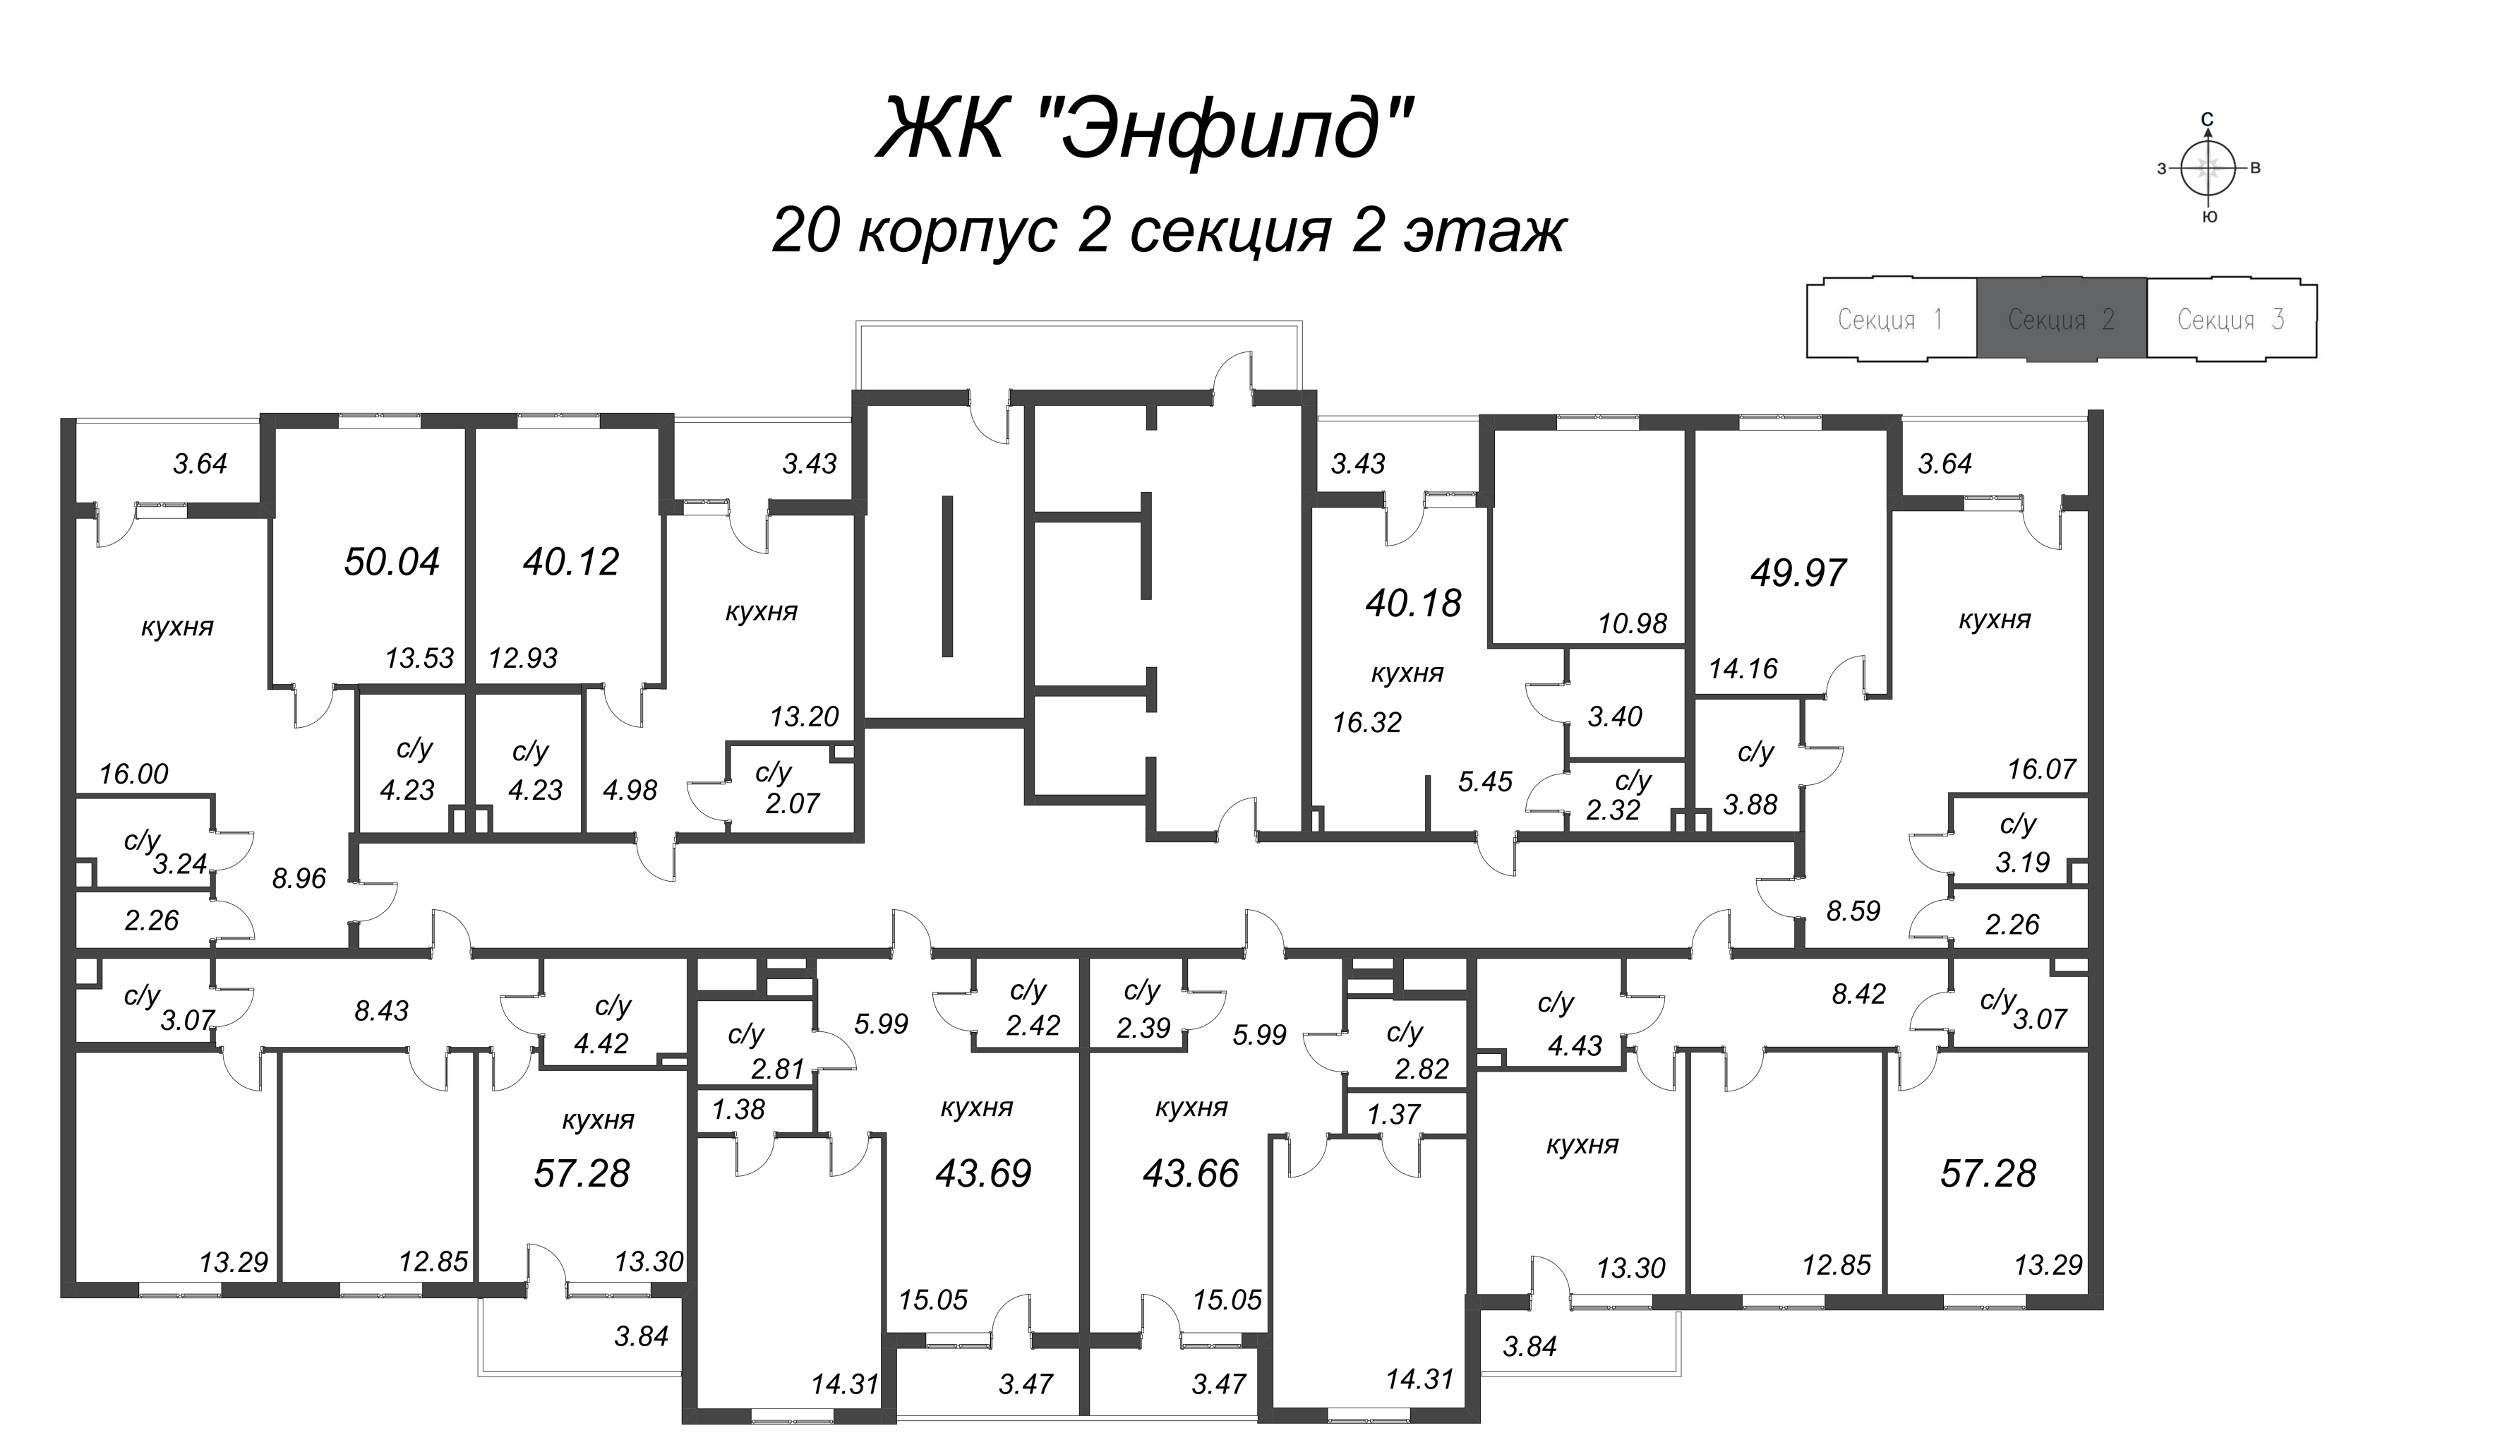 1-комнатная квартира, 40.12 м² в ЖК "Энфилд" - планировка этажа